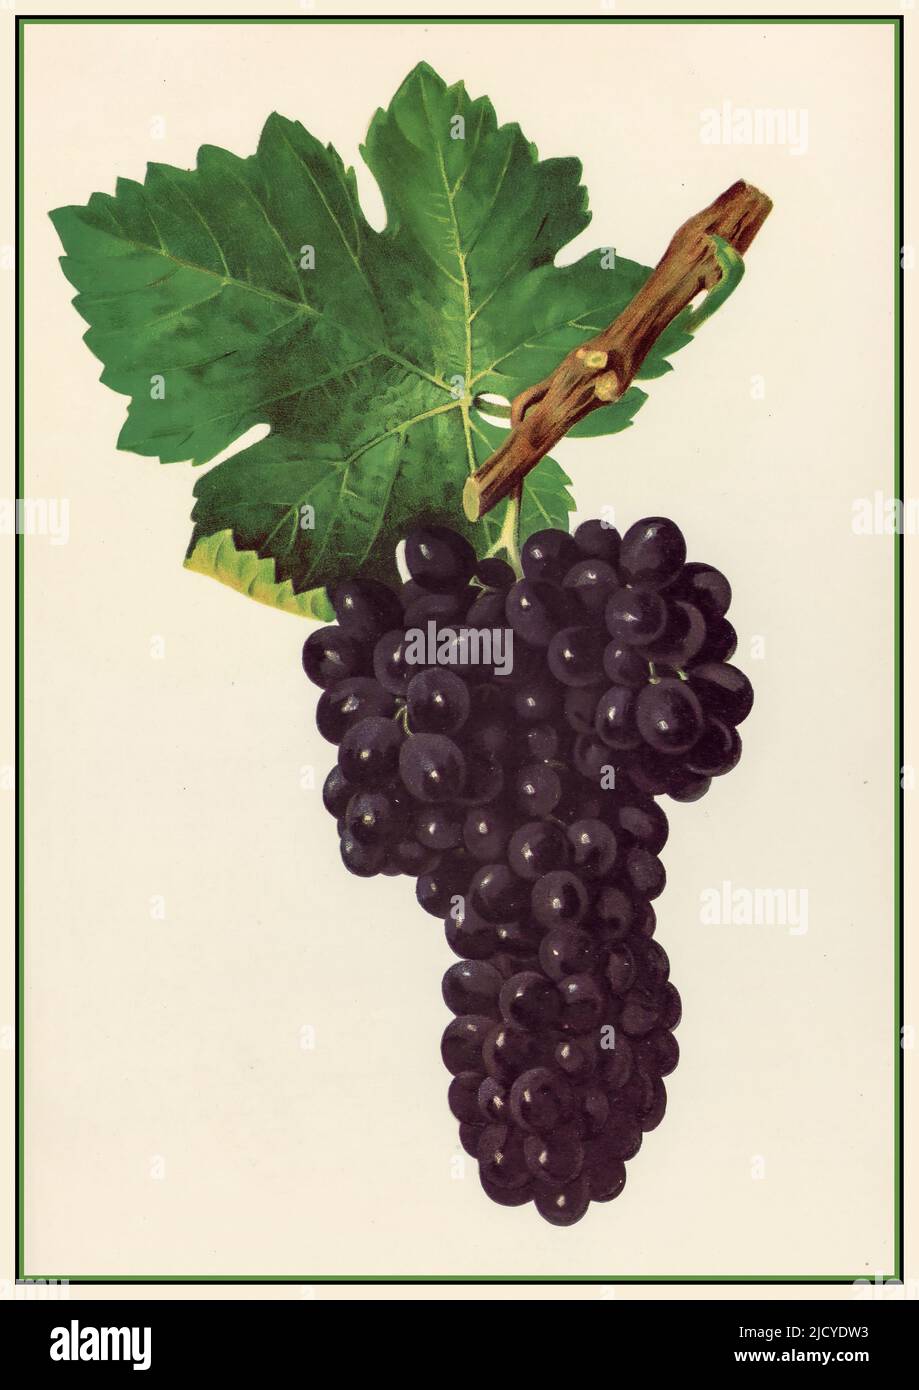 SYRAH mature mazzo di vino Syrah uva litografia Illustrazione. Il Syrah, noto anche come Shiraz, è un vitigno dalla pelle scura coltivato in tutto il mondo e utilizzato principalmente per produrre vino rosso. Foto Stock